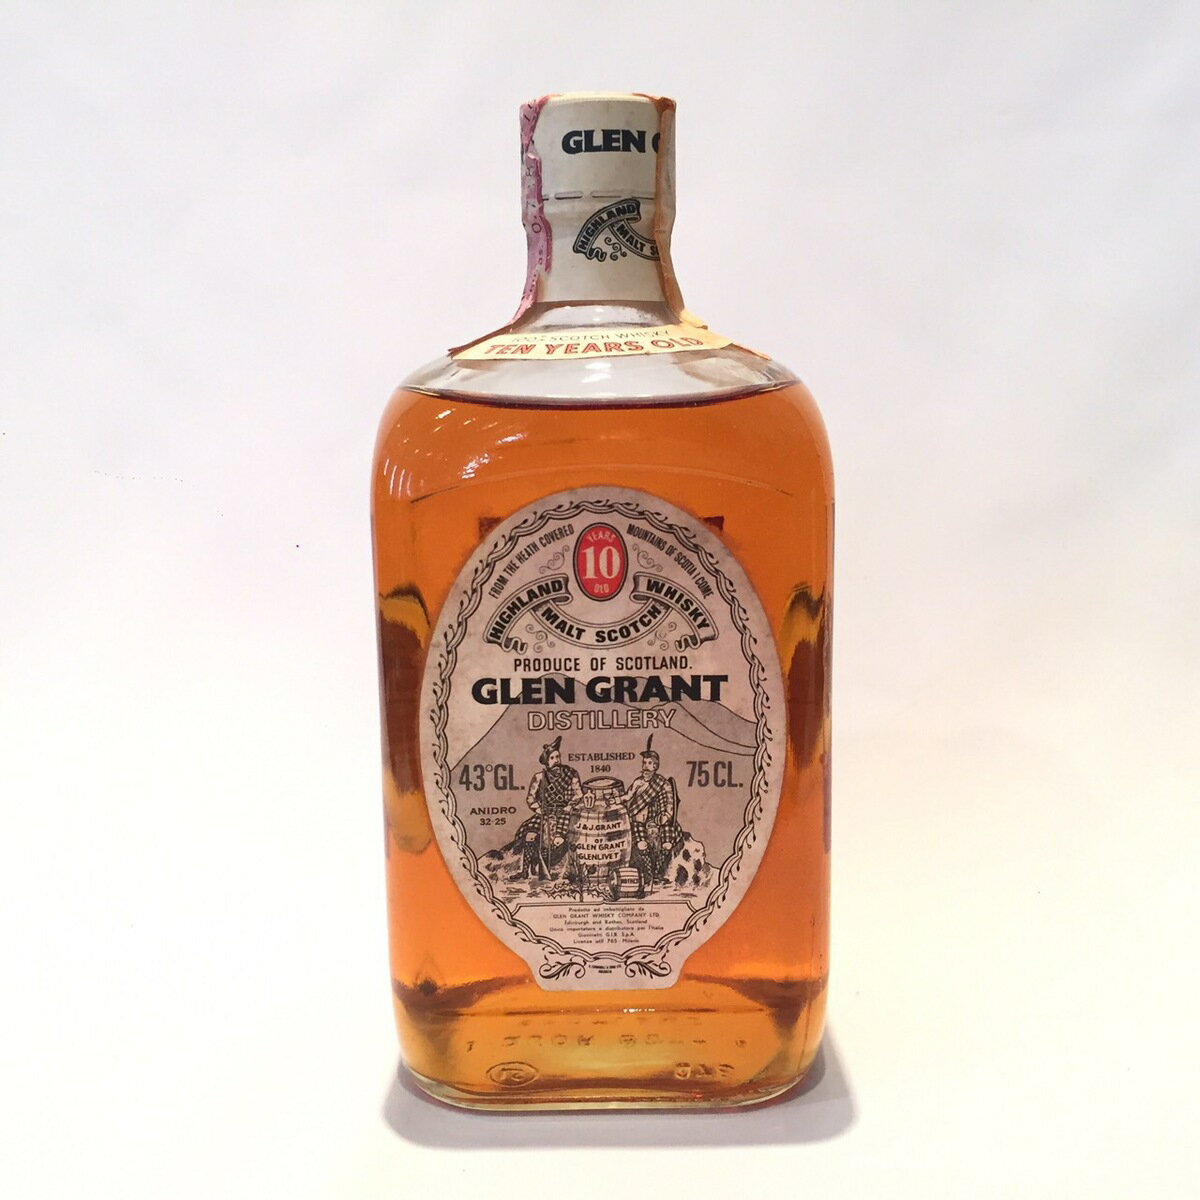 グレングラント Glen Grant Original Bottling 10 Years old 43° GL. / 75 CL. black box Giovinetti G.I.B.-S.p.A.